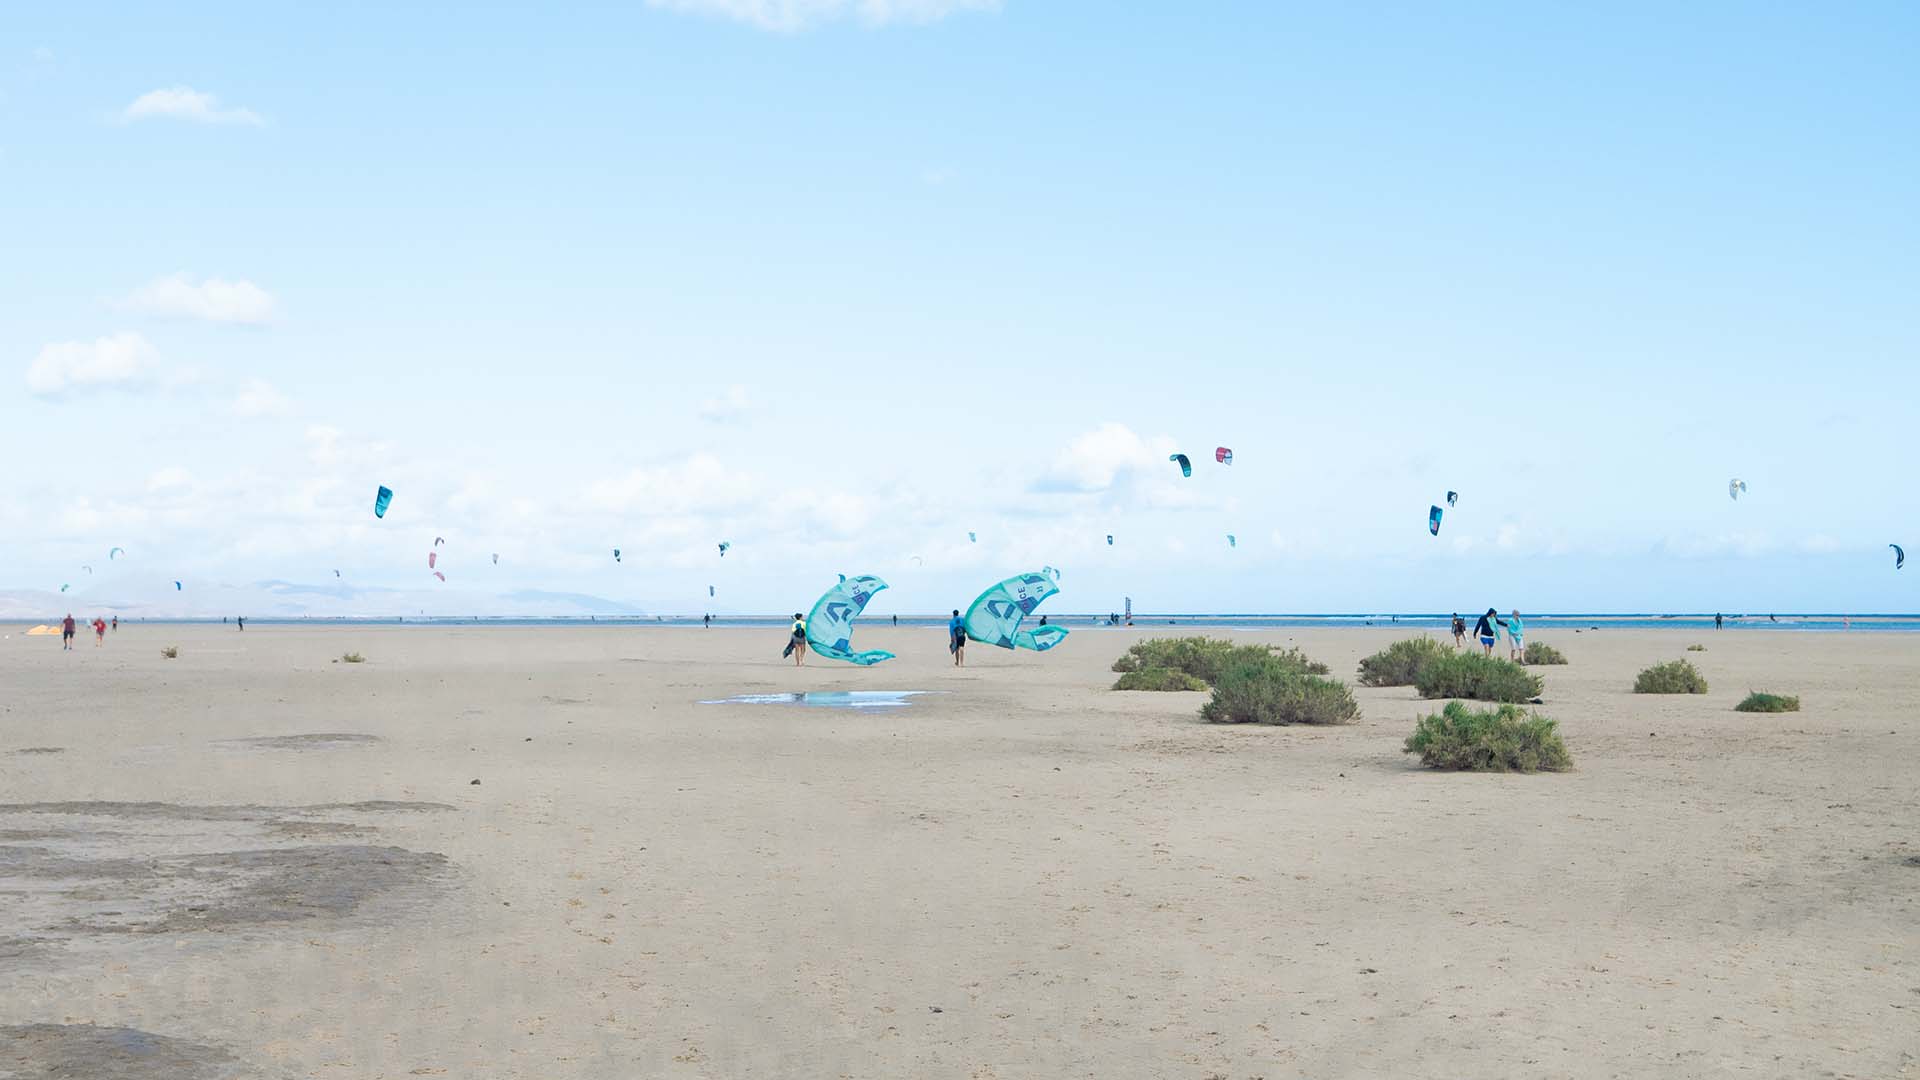 Kitesurf spot in Cape Verde